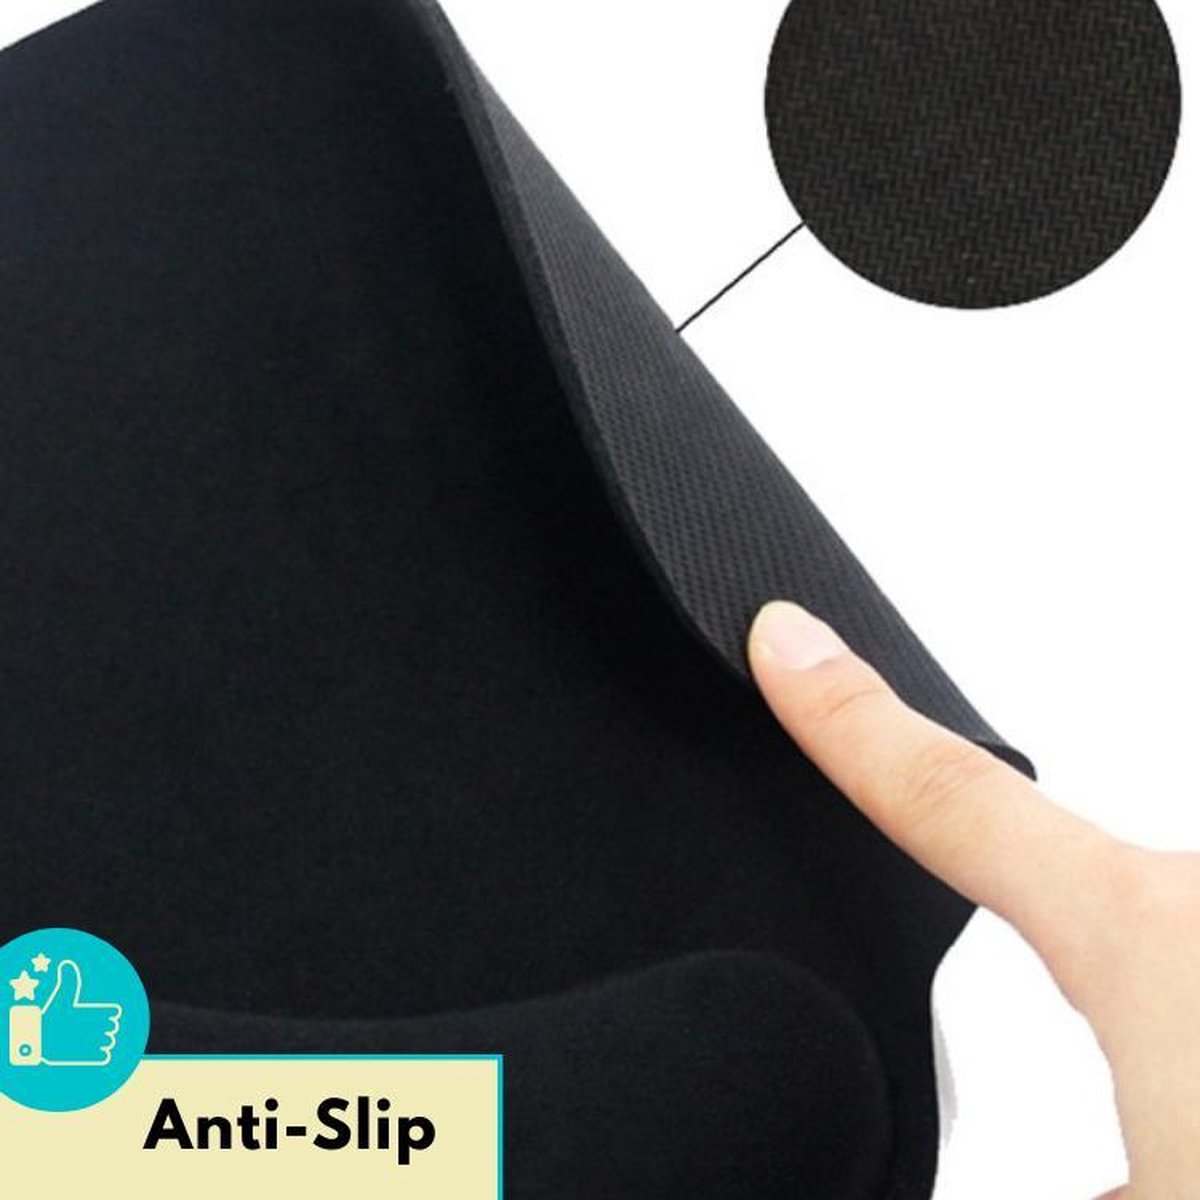 Lynnz de souris Lynnz® avec repose-poignet ergonomique bleu 2021, gel -  anti RSI 